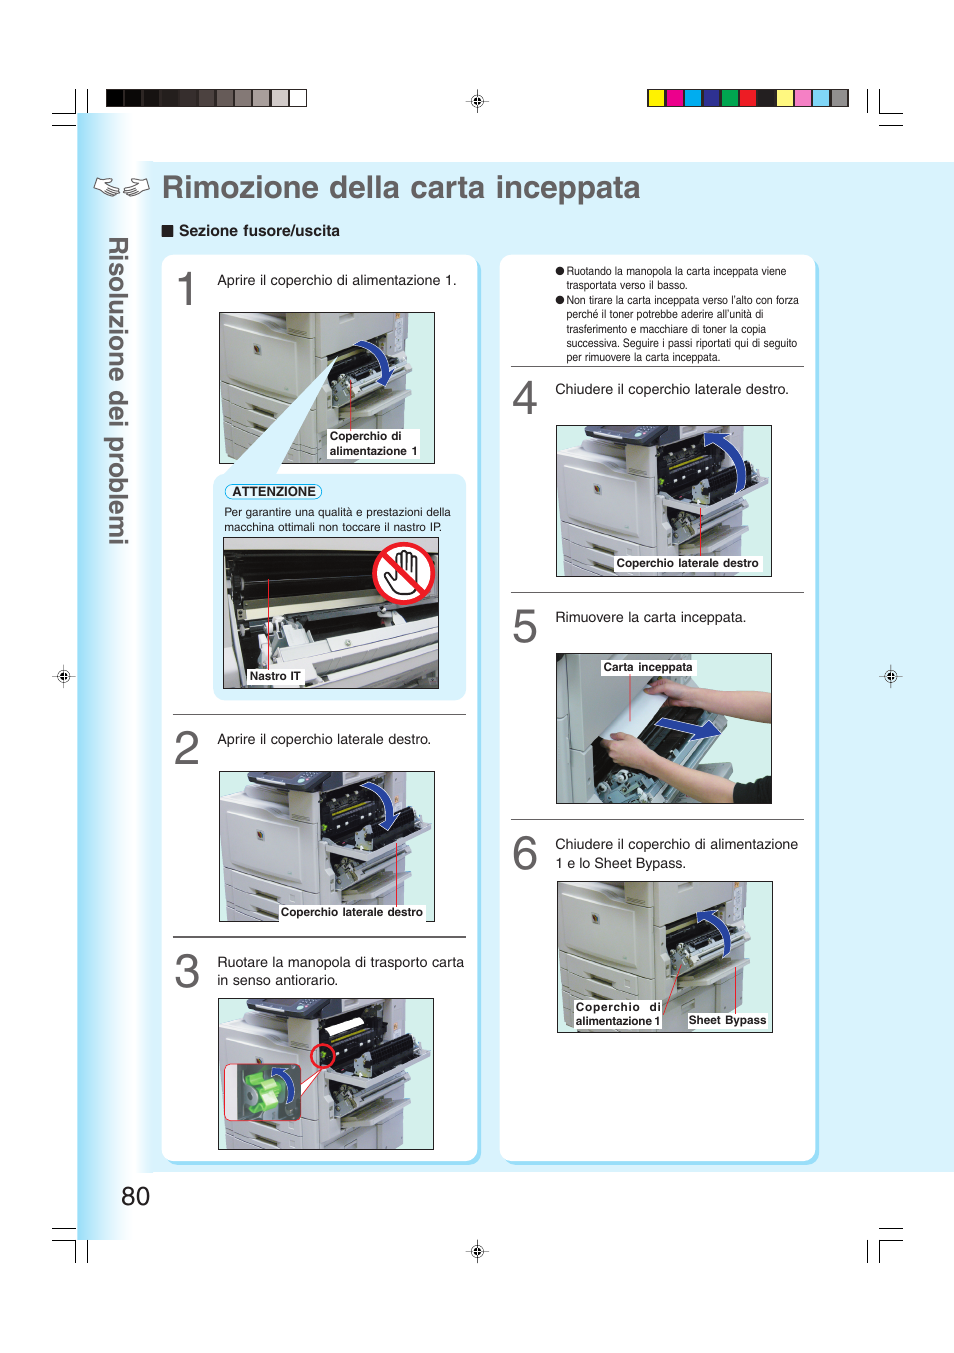 Rimozione della carta inceppata, Risoluzione dei pr o b lemi 80 | Panasonic DPC262 Manuale d'uso | Pagina 80 / 110